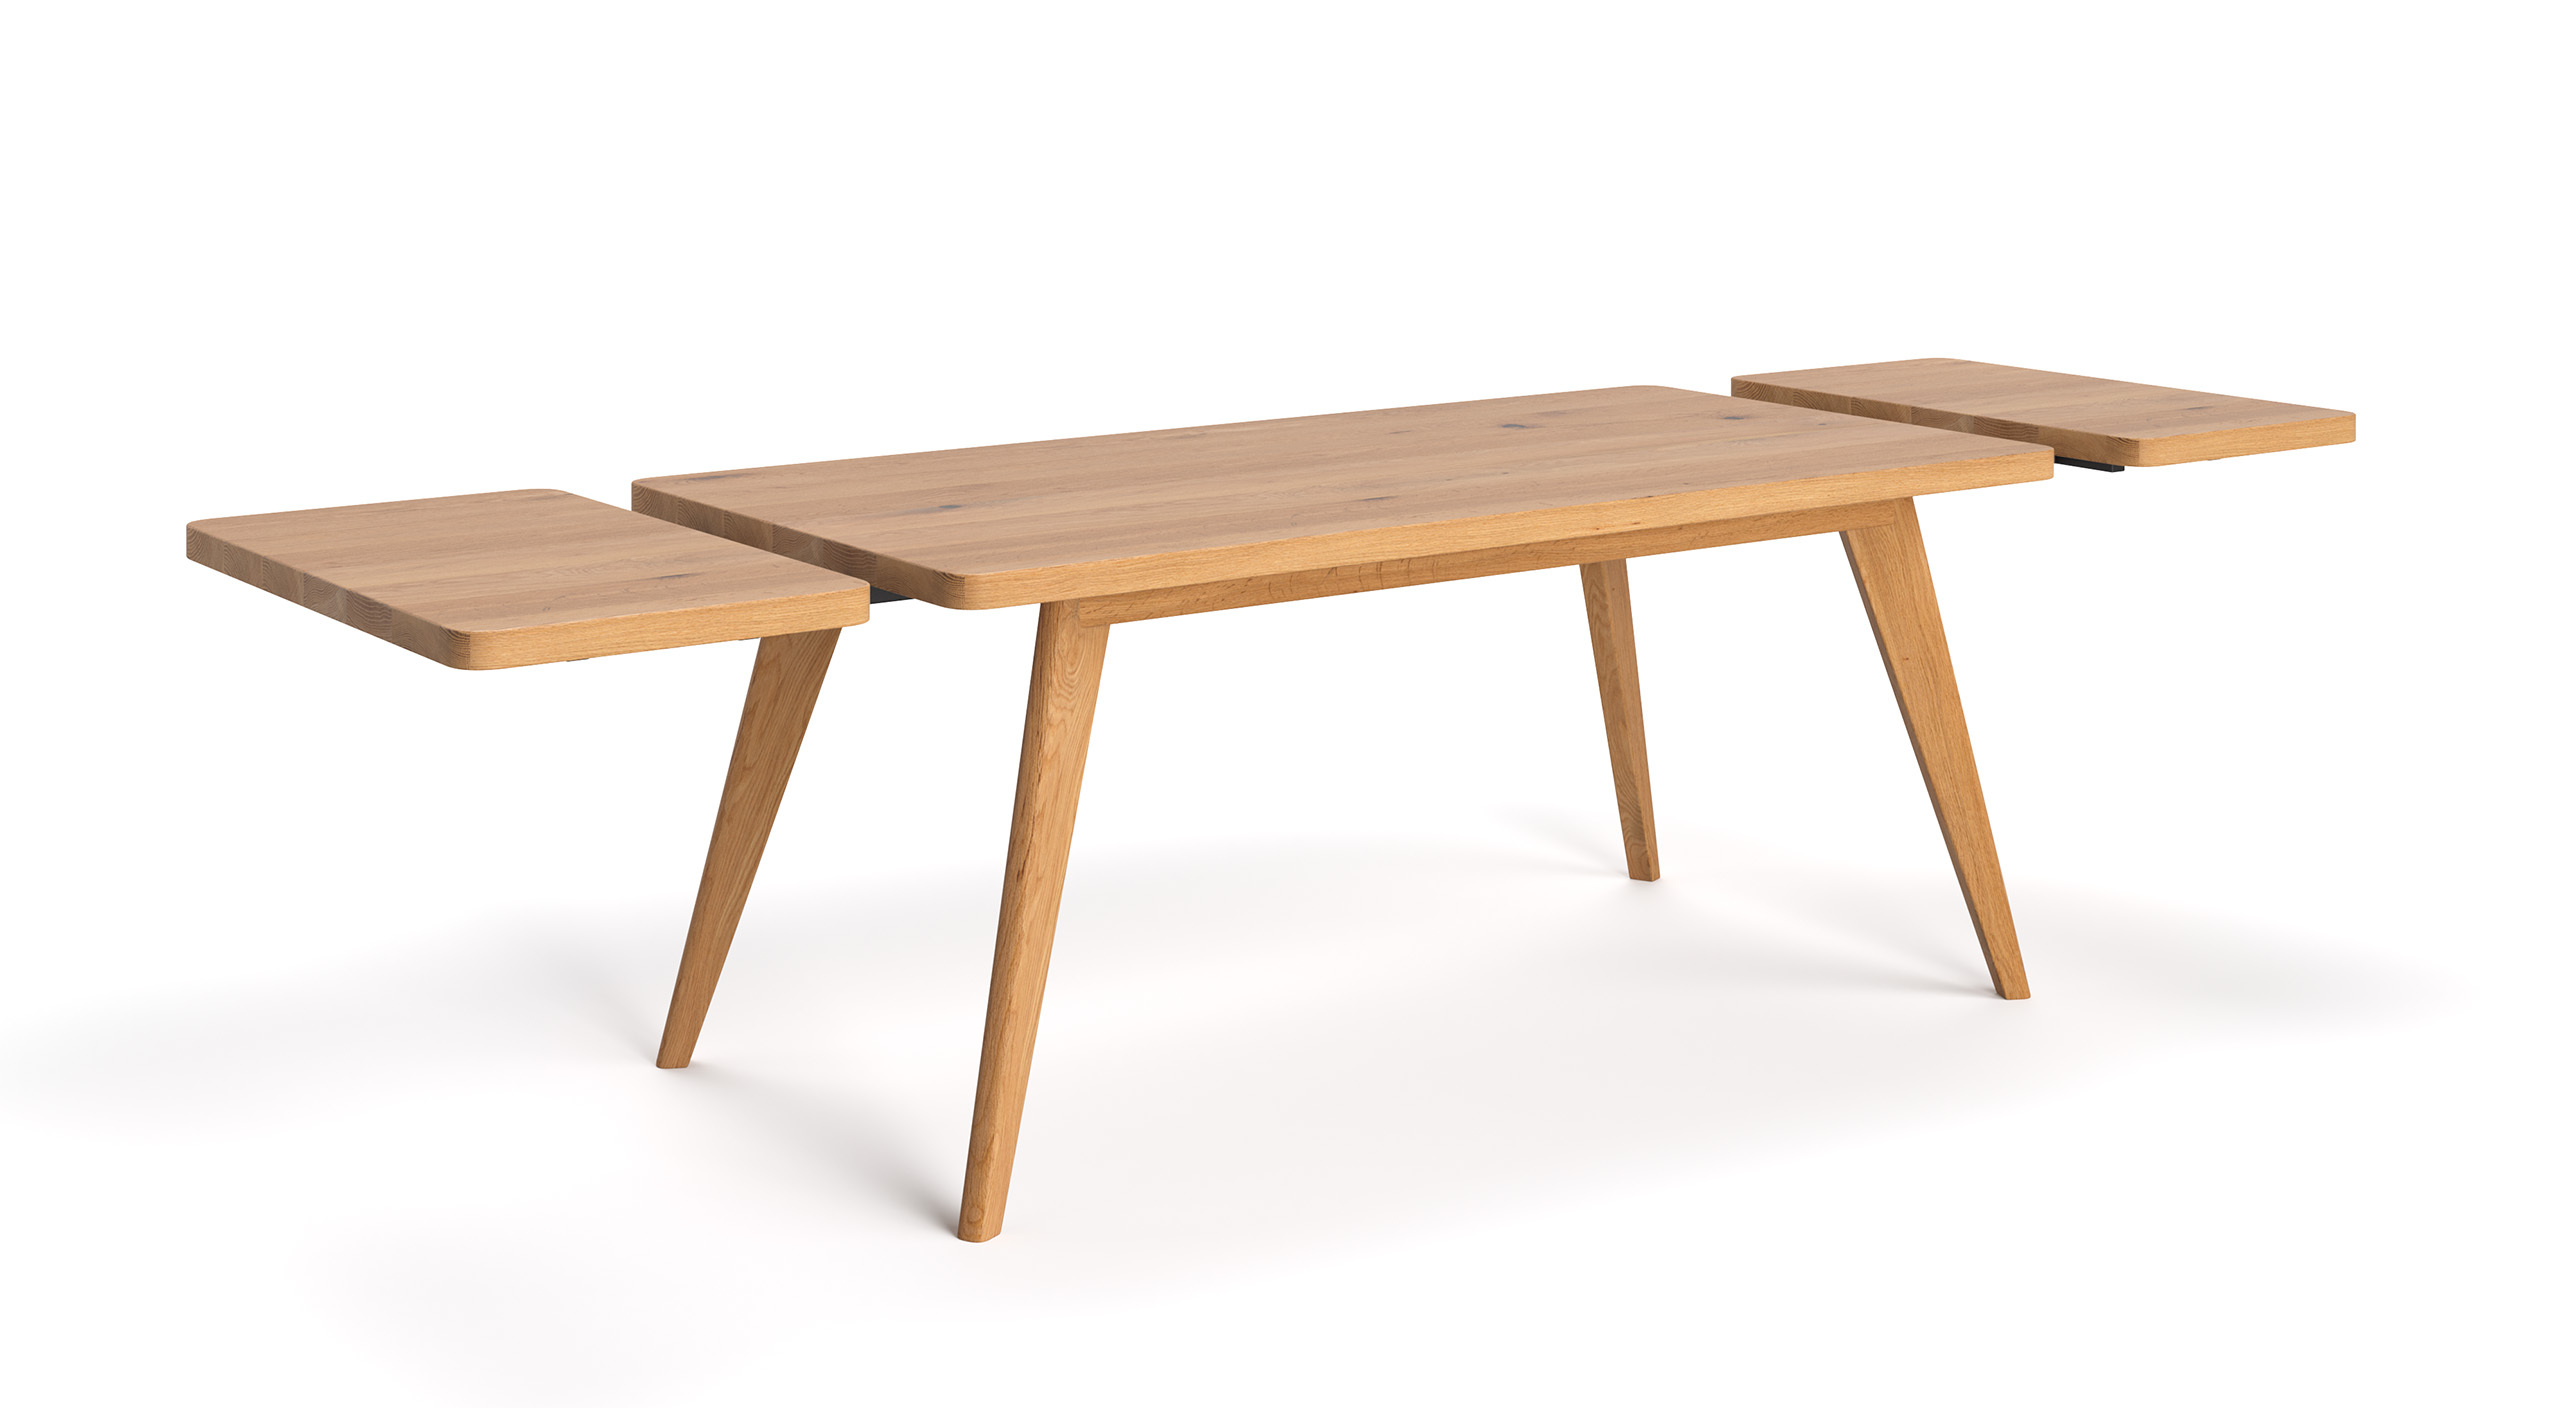 Stół Grace wykonany z litego drewna dębowego